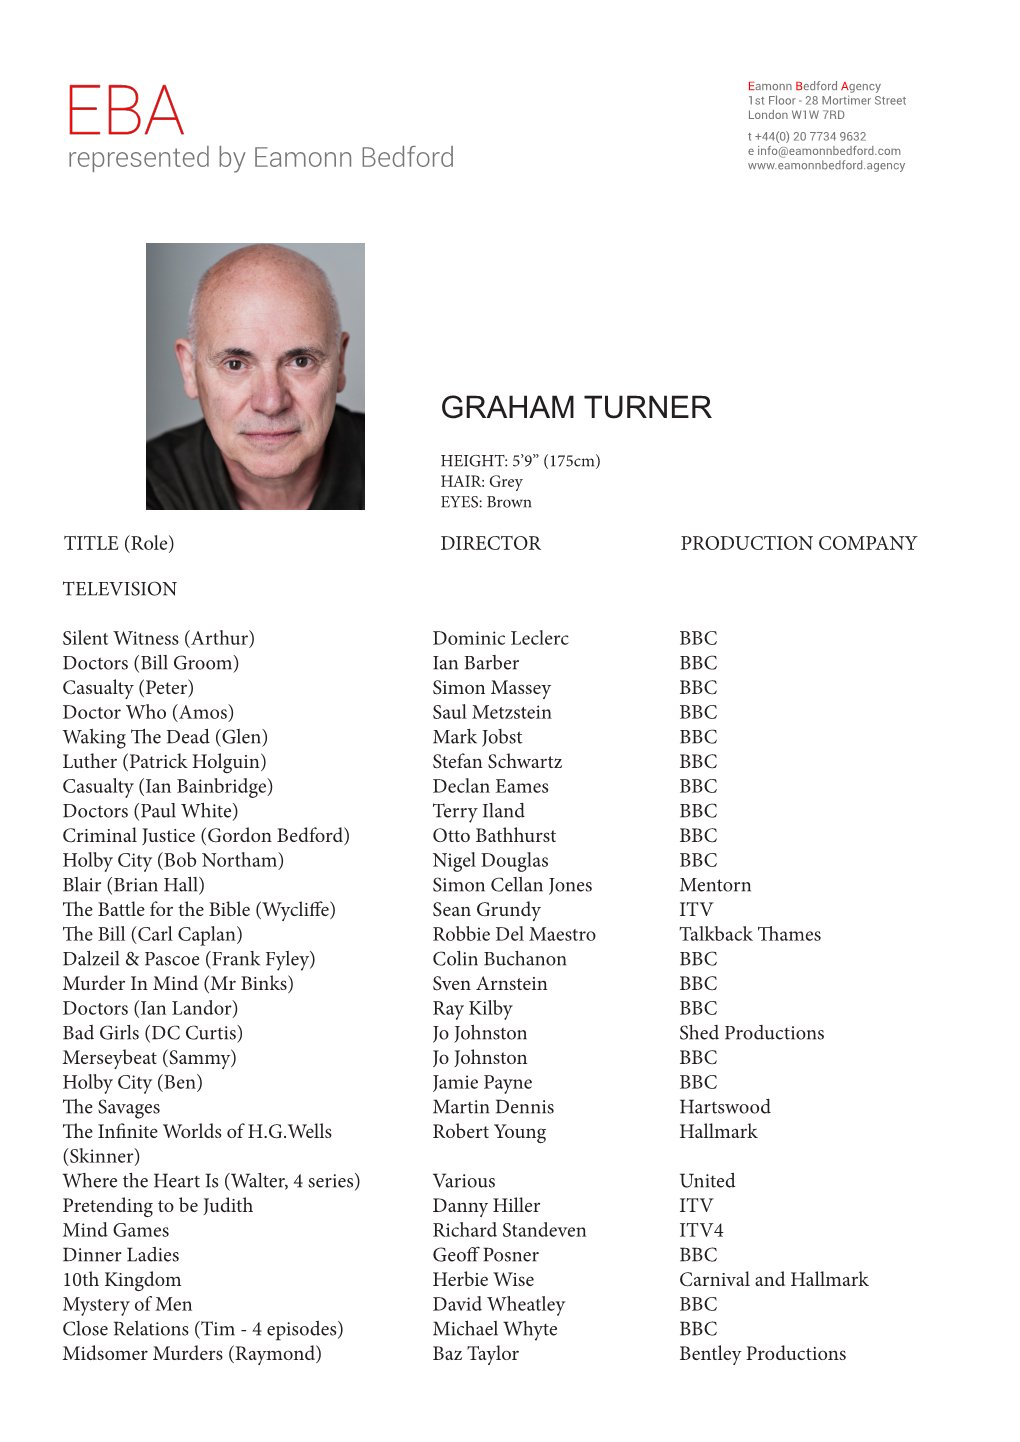 Graham Turner